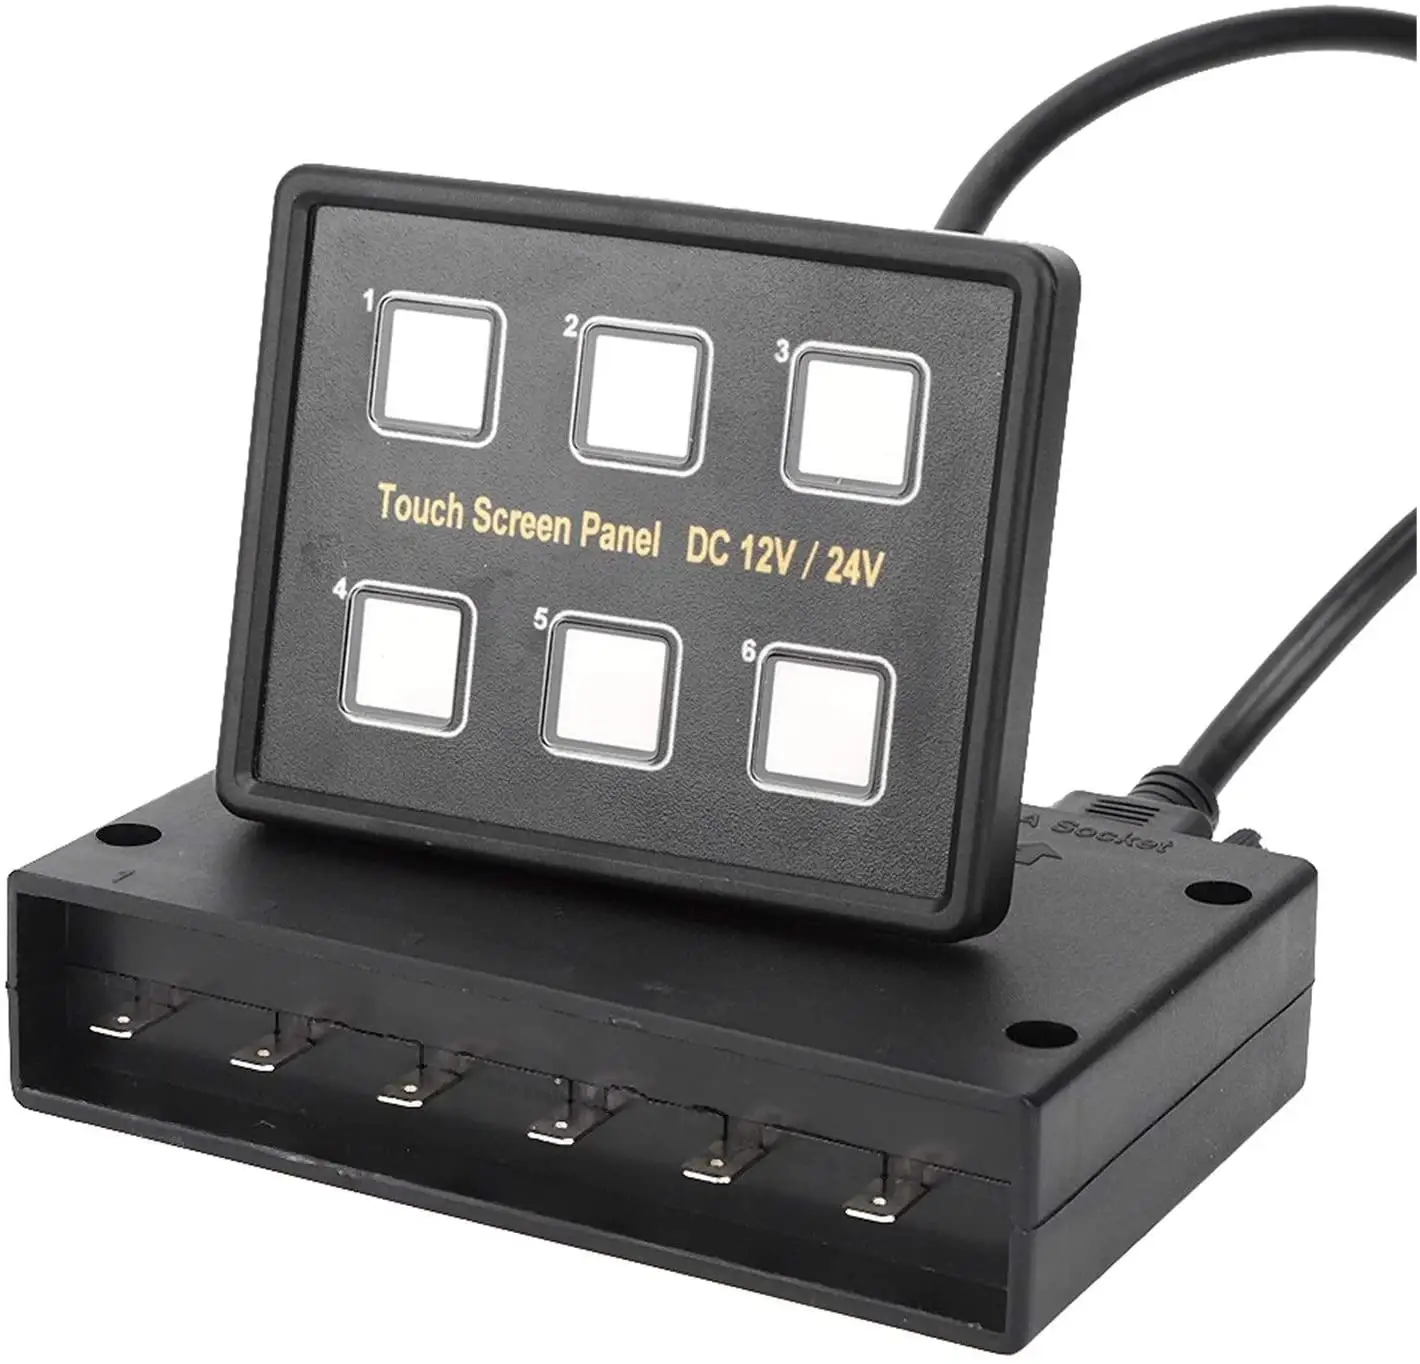 Universale 12V 24V 6 Gang LED Touch Screen pannello con scatola di controllo sigillata per camion, jeep, ATV/UTV, auto, barche Marine, RV